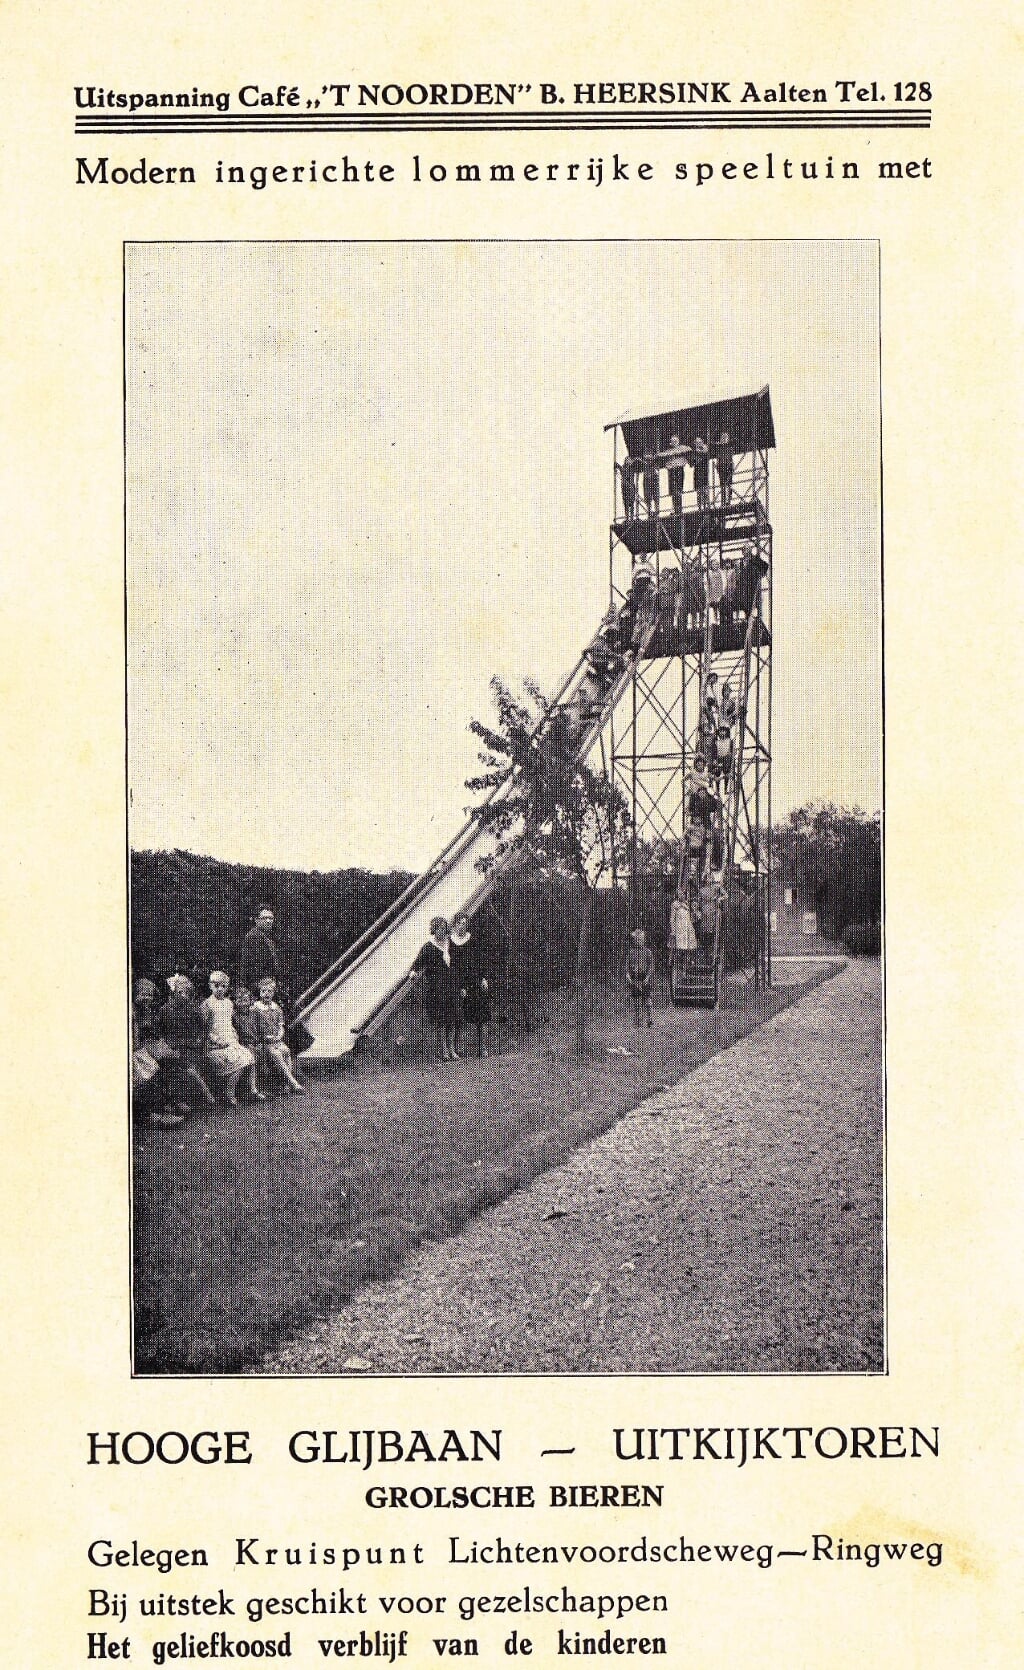 't Noorden, Aalten, grote glijbaan, VVV gids jaren '30. Foto: collectie Leo van der Linde